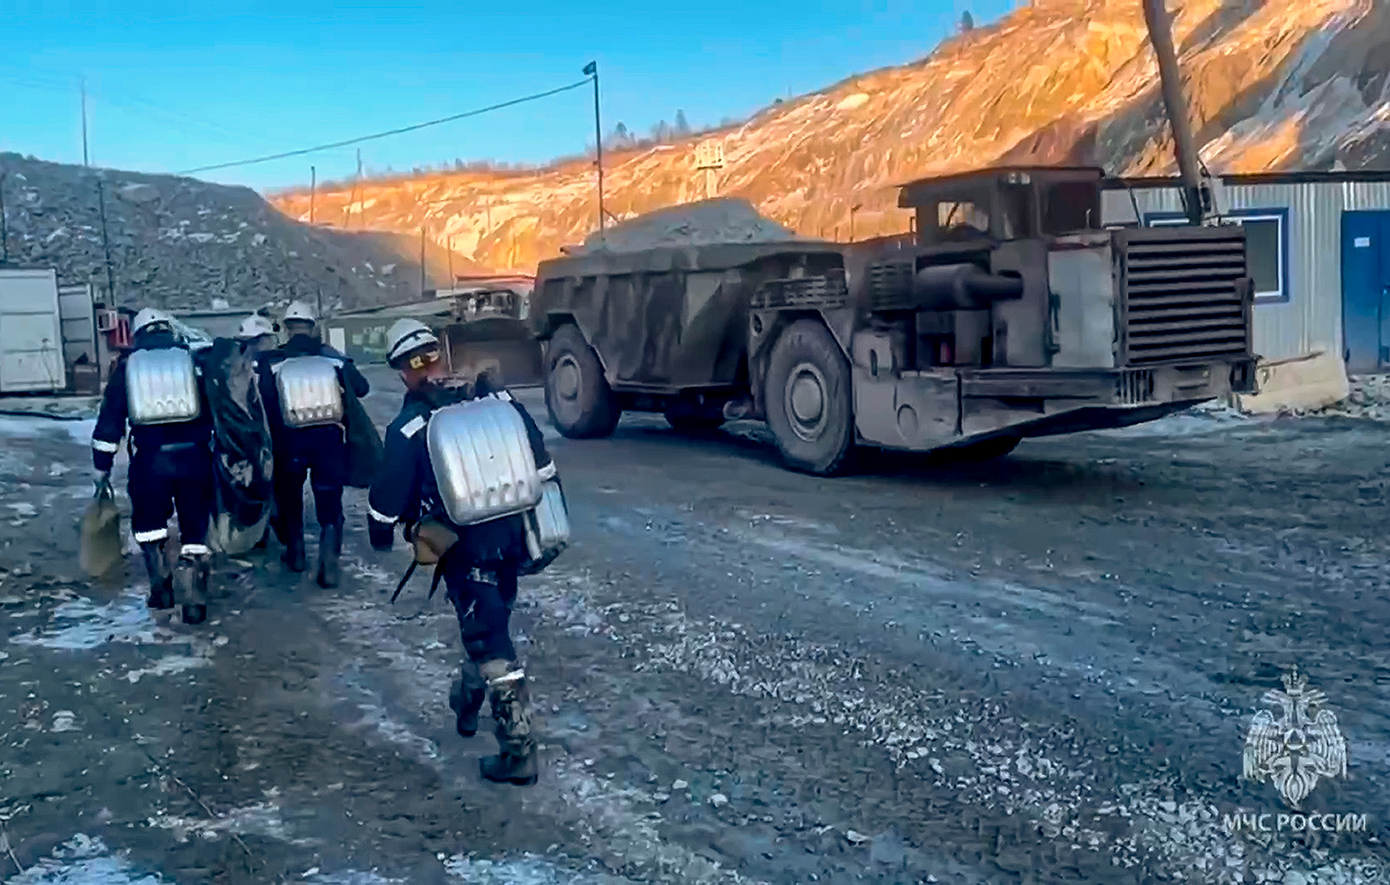 «Δύσκολη η κατάσταση» για τους 13 εργάτες που παραμένουν εγκλωβισμένοι σε χρυσωρυχείο της Ρωσίας δύο ημέρες